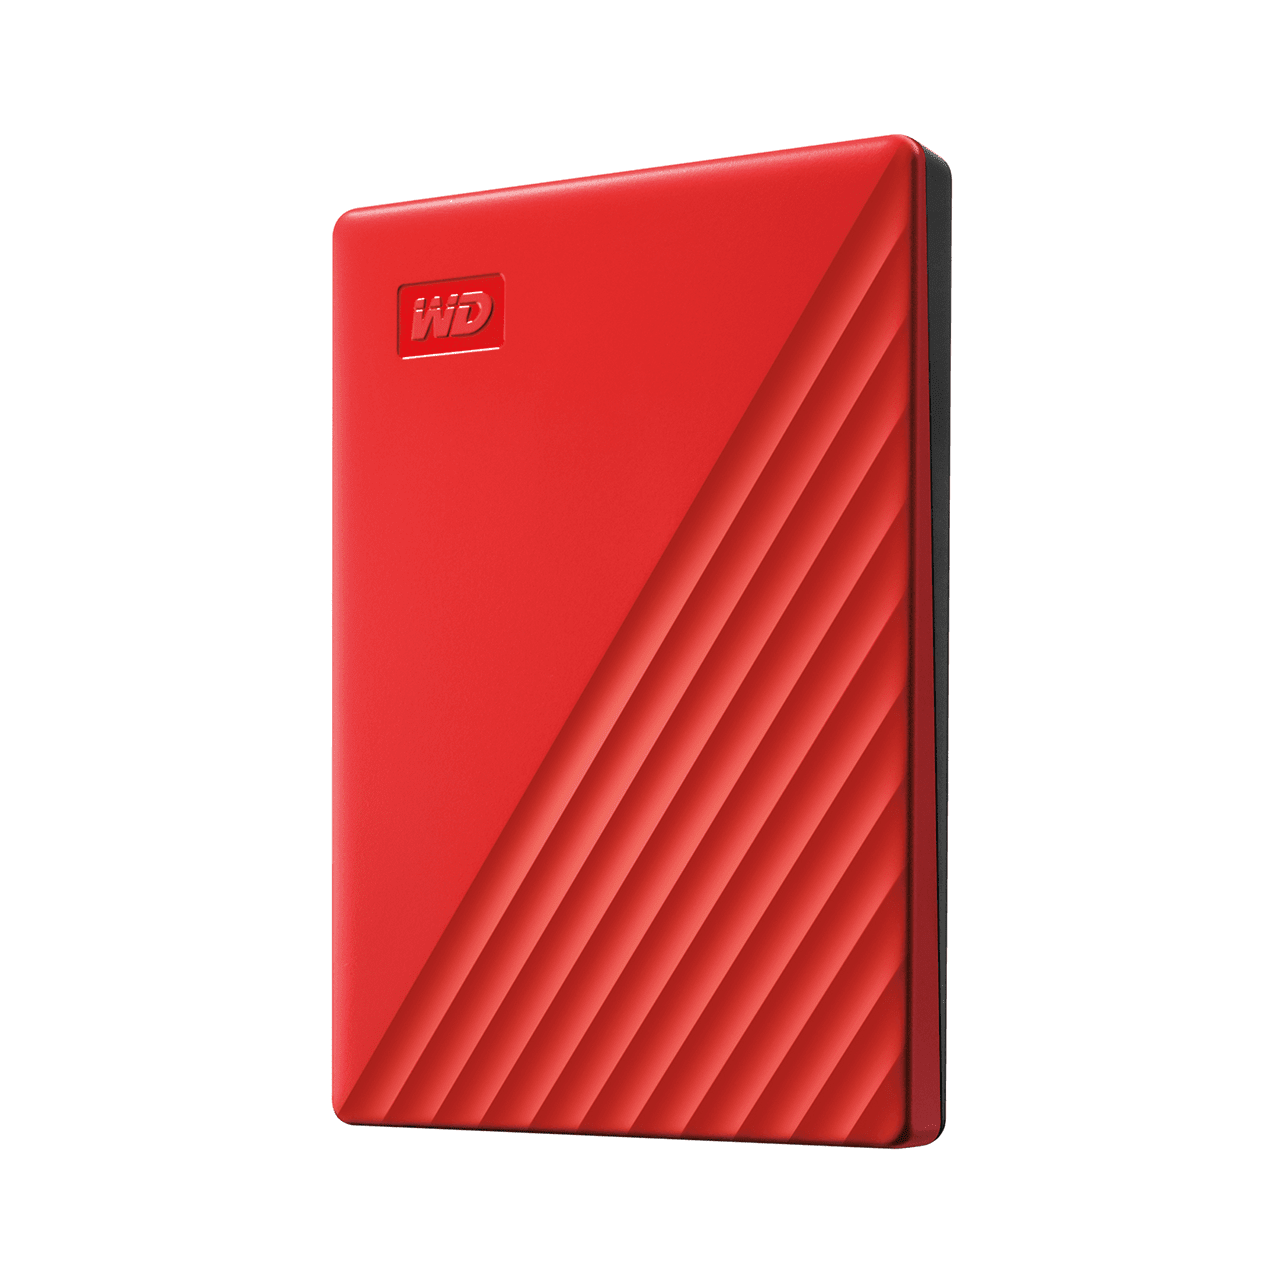 Ổ cứng WD My Passport New USB 3.2 4TB Red Hàng Chính Hãng